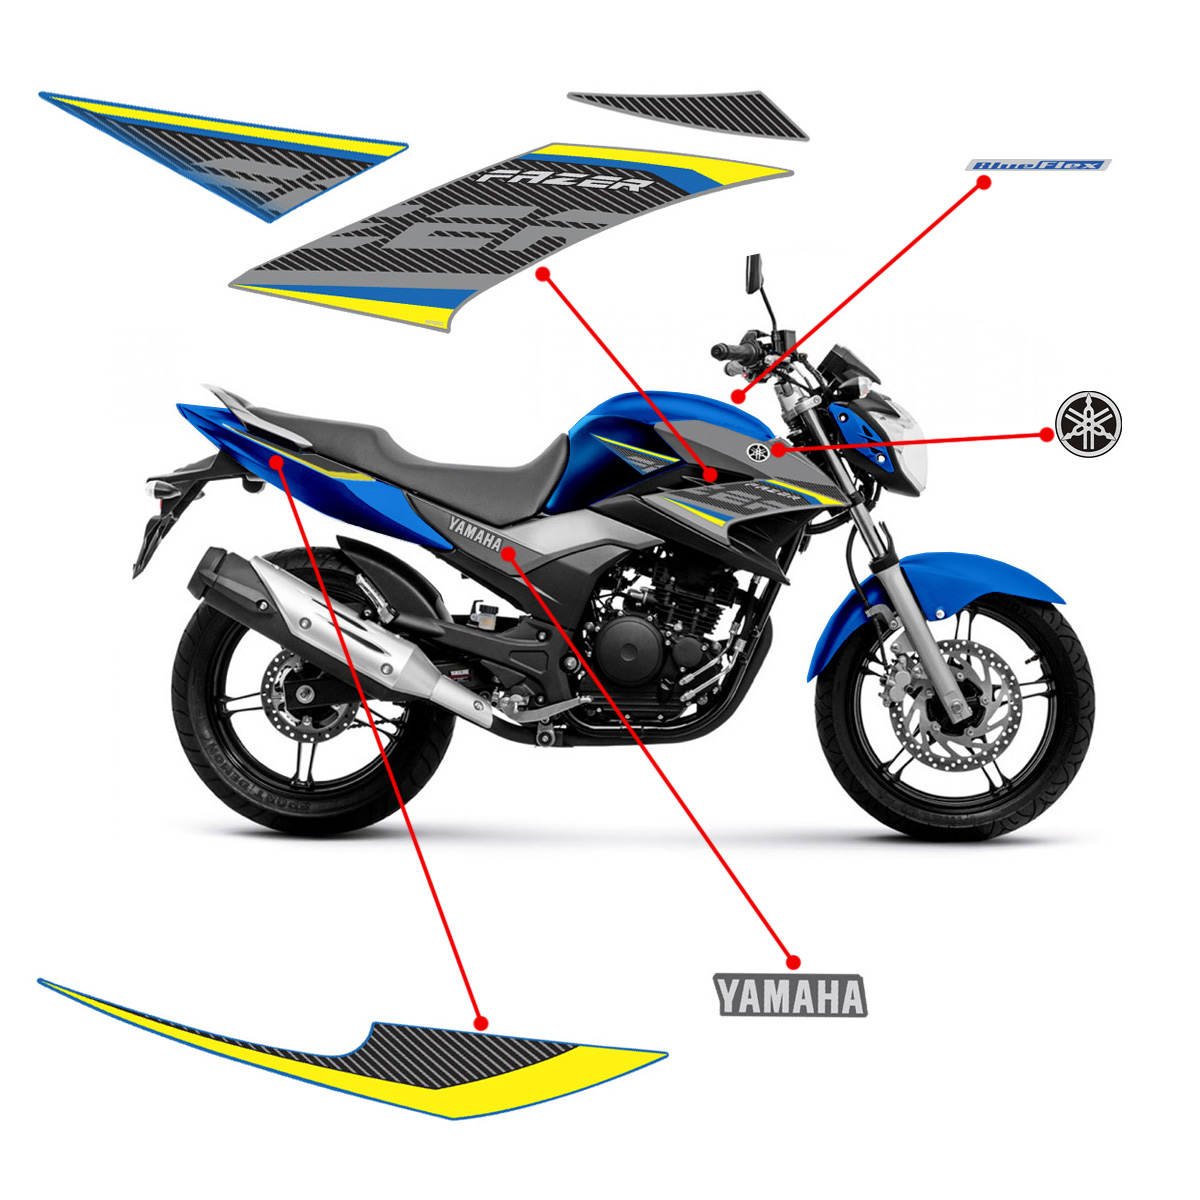 Kit Adesivos Yamaha Fazer 250 2017 2018 Moto Azul + Emblemas